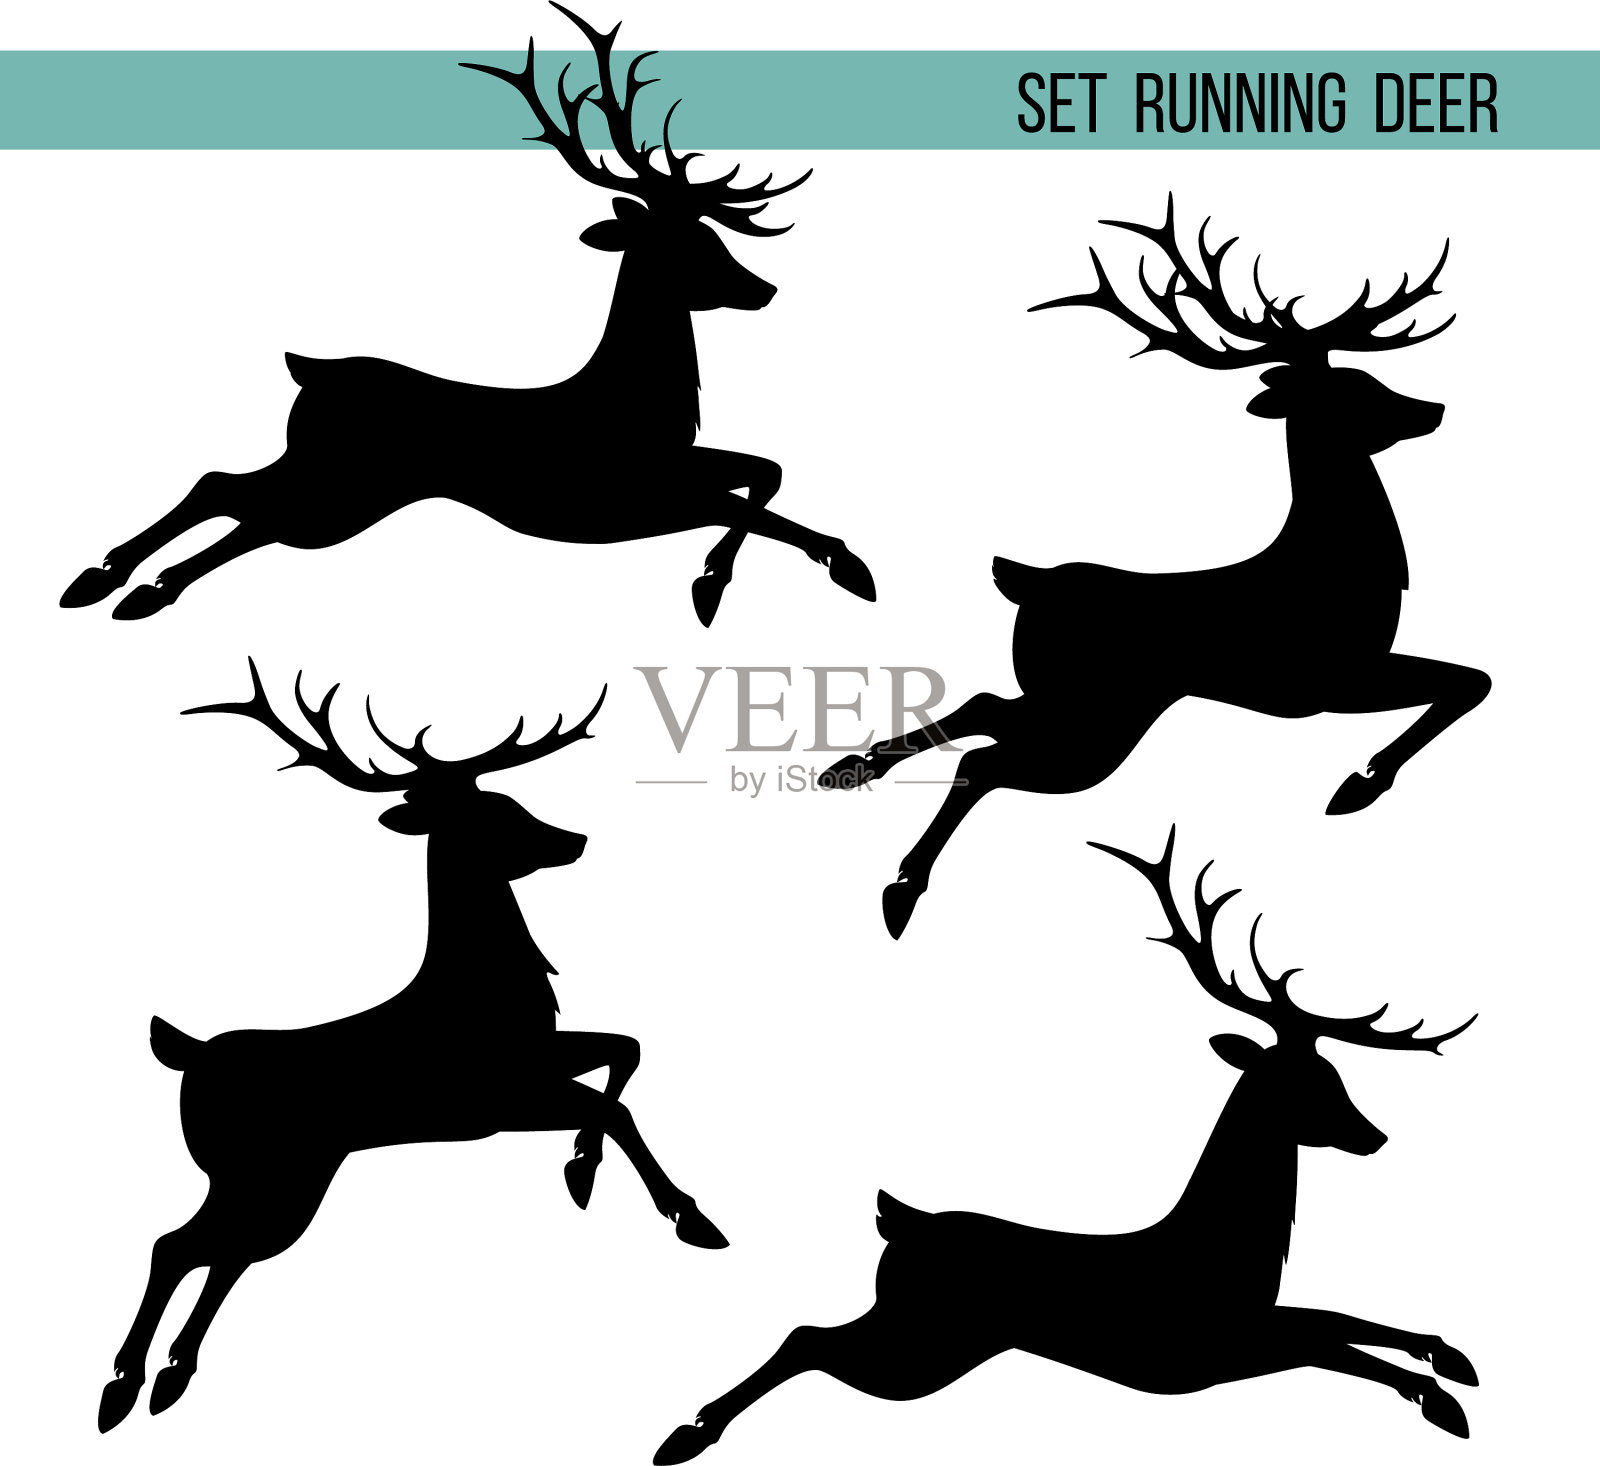 设置奔跑的鹿的剪影图标素材